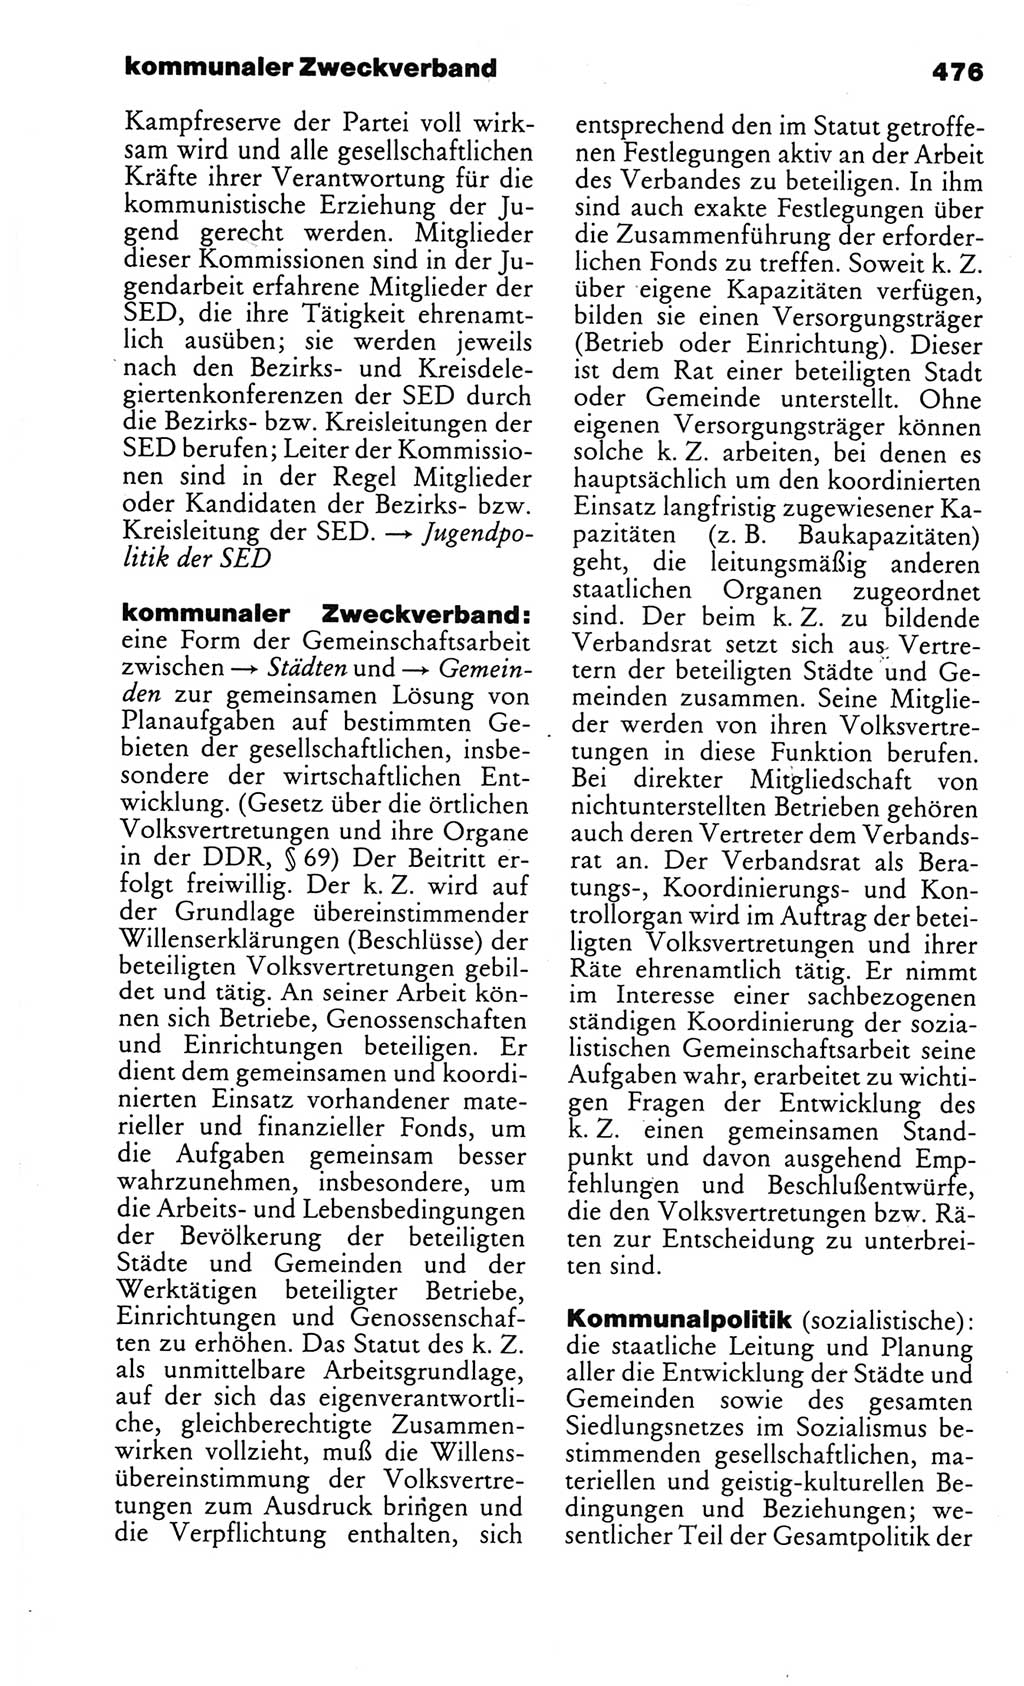 Kleines politisches Wörterbuch [Deutsche Demokratische Republik (DDR)] 1986, Seite 476 (Kl. pol. Wb. DDR 1986, S. 476)